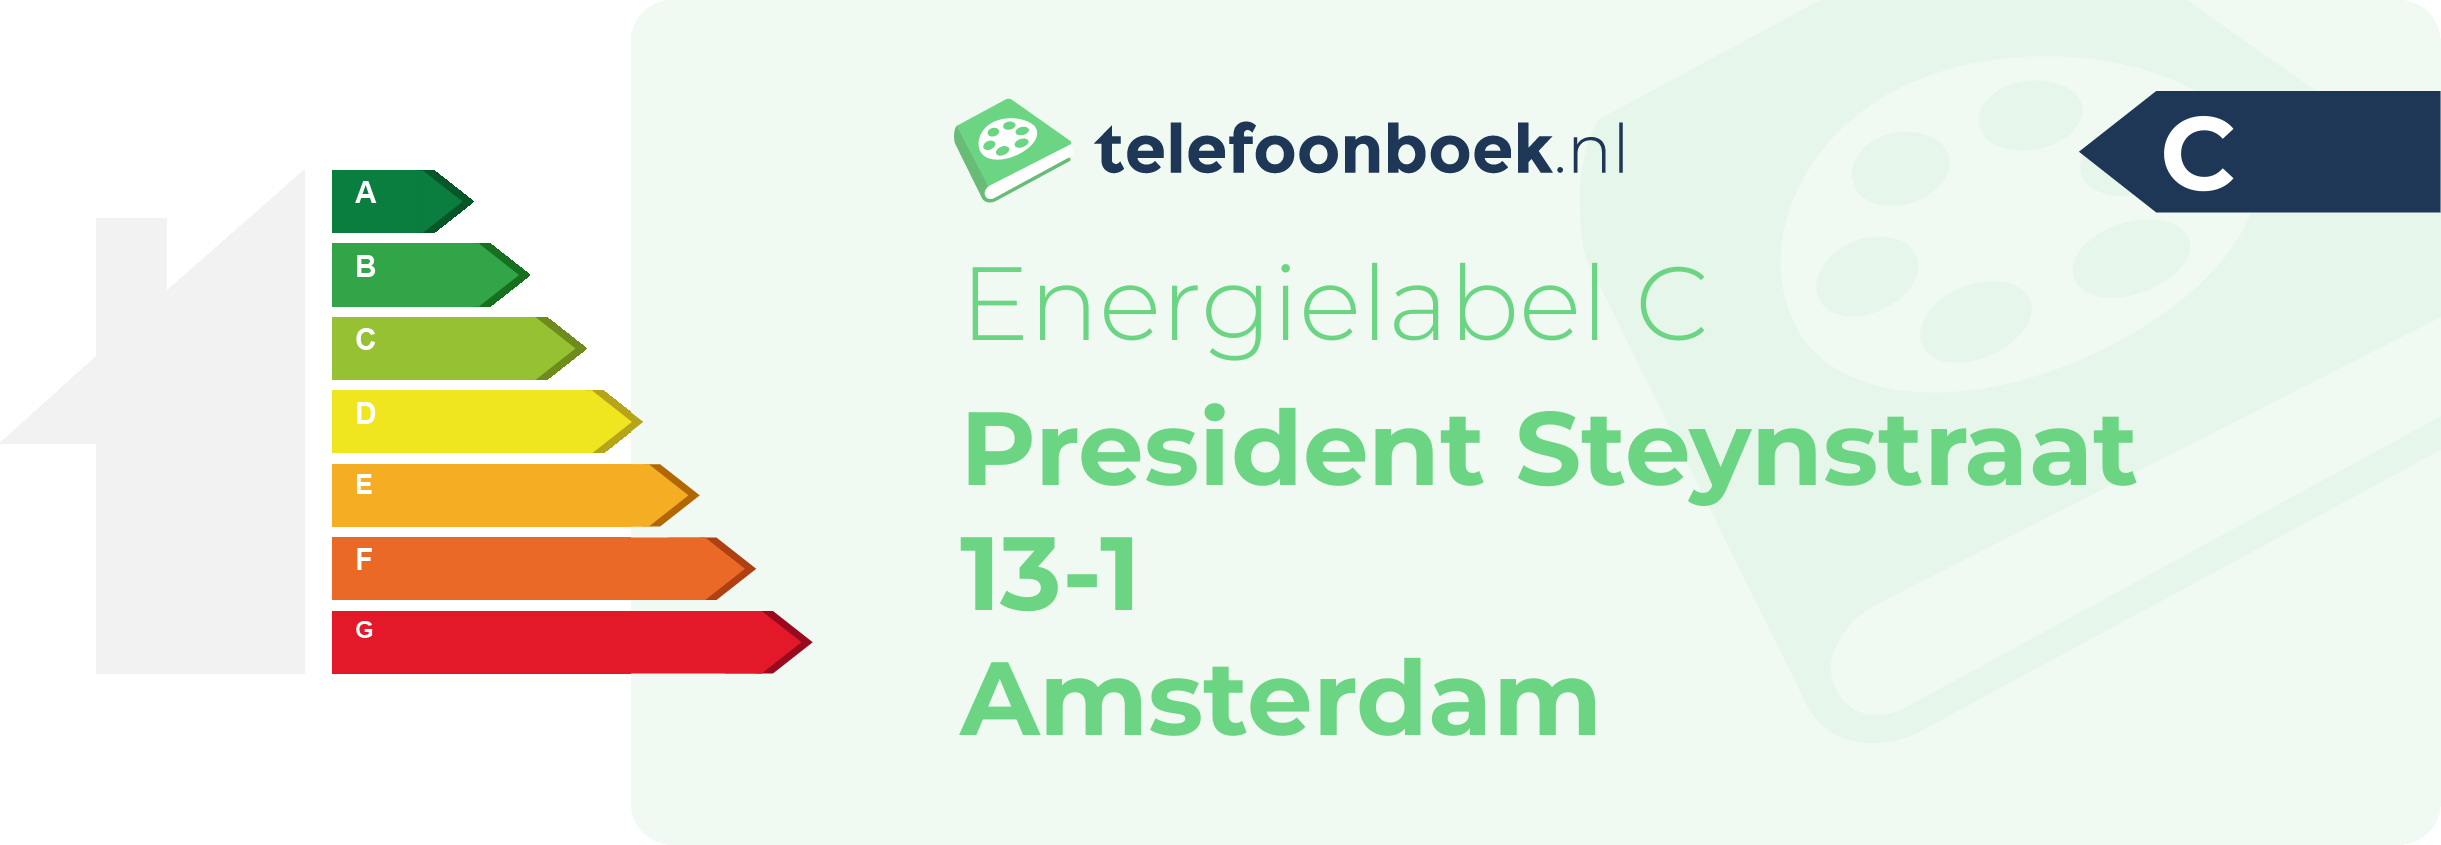 Energielabel President Steynstraat 13-1 Amsterdam